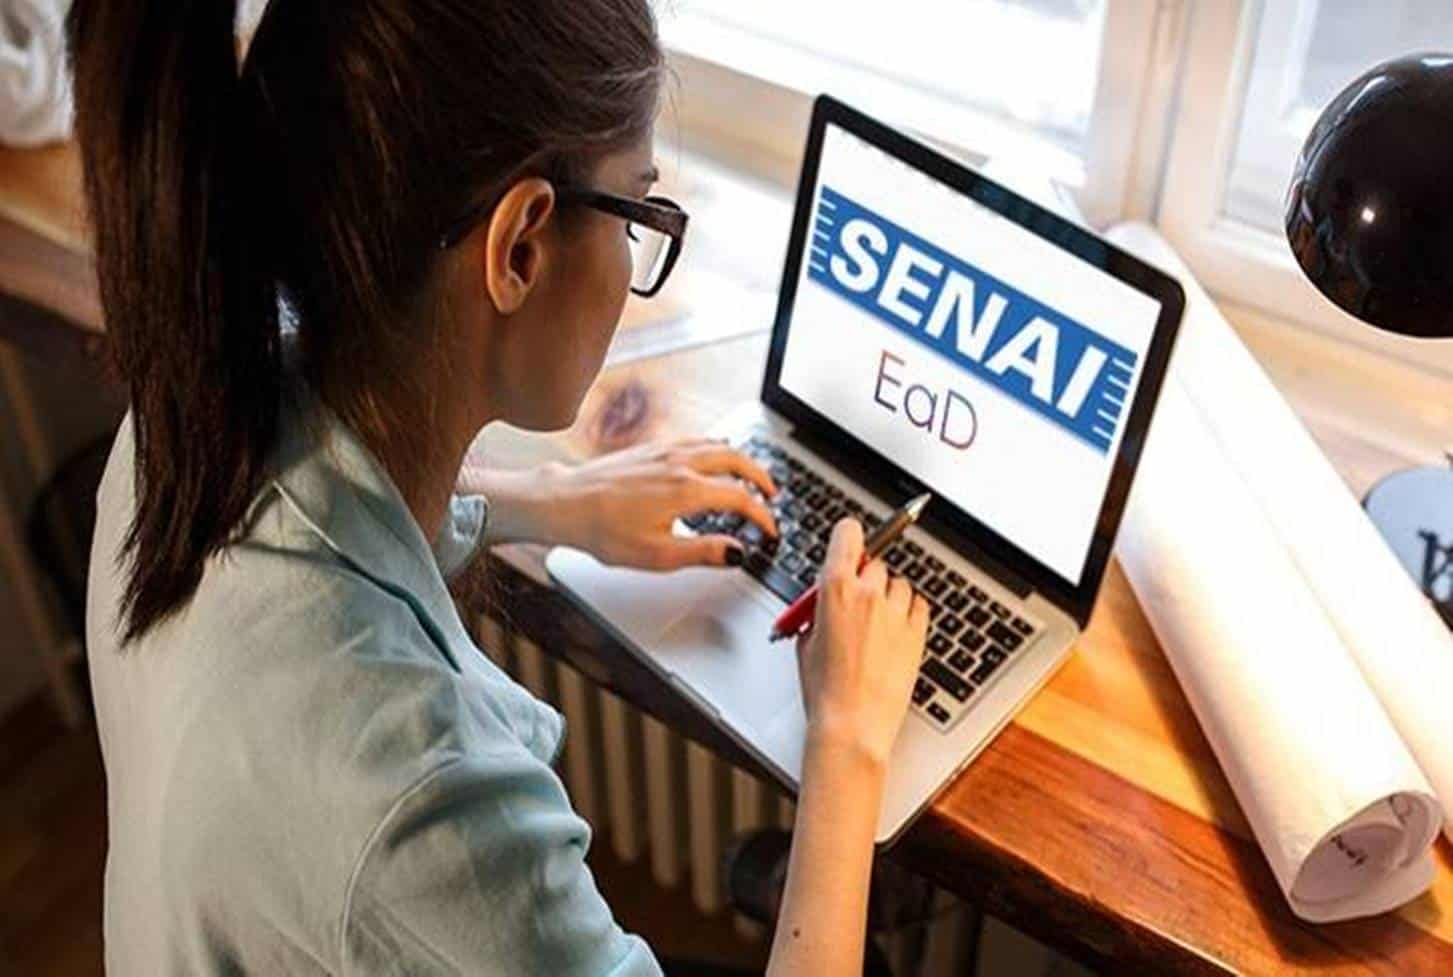 Senac e Senai tem milhares de vagas em cursos online gratuitos